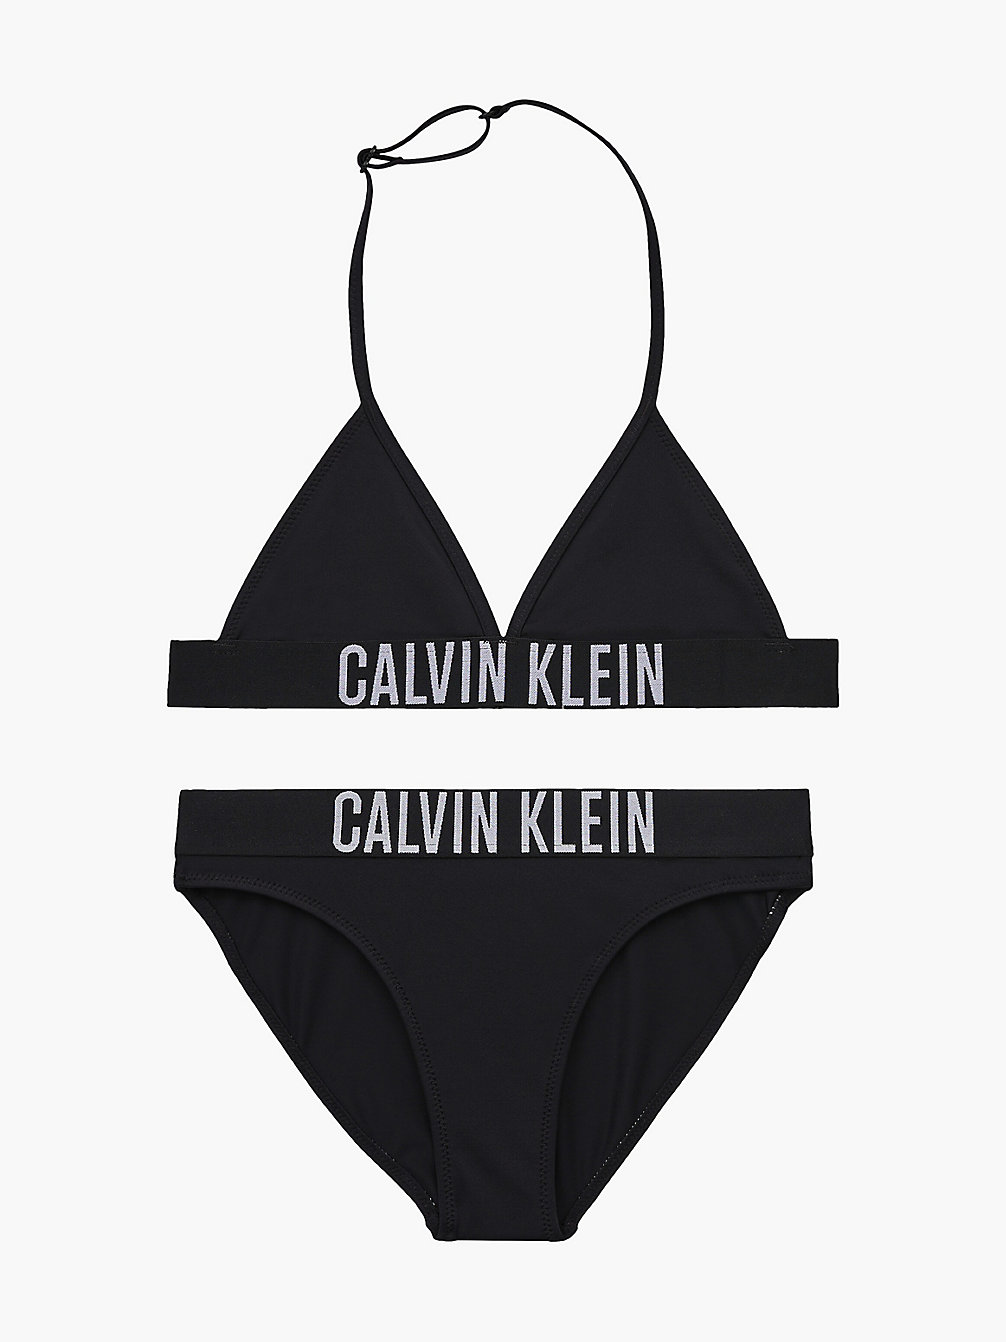 PVH BLACK Girls Triangle Bikini Set - Intense Power undefined girls Calvin Klein